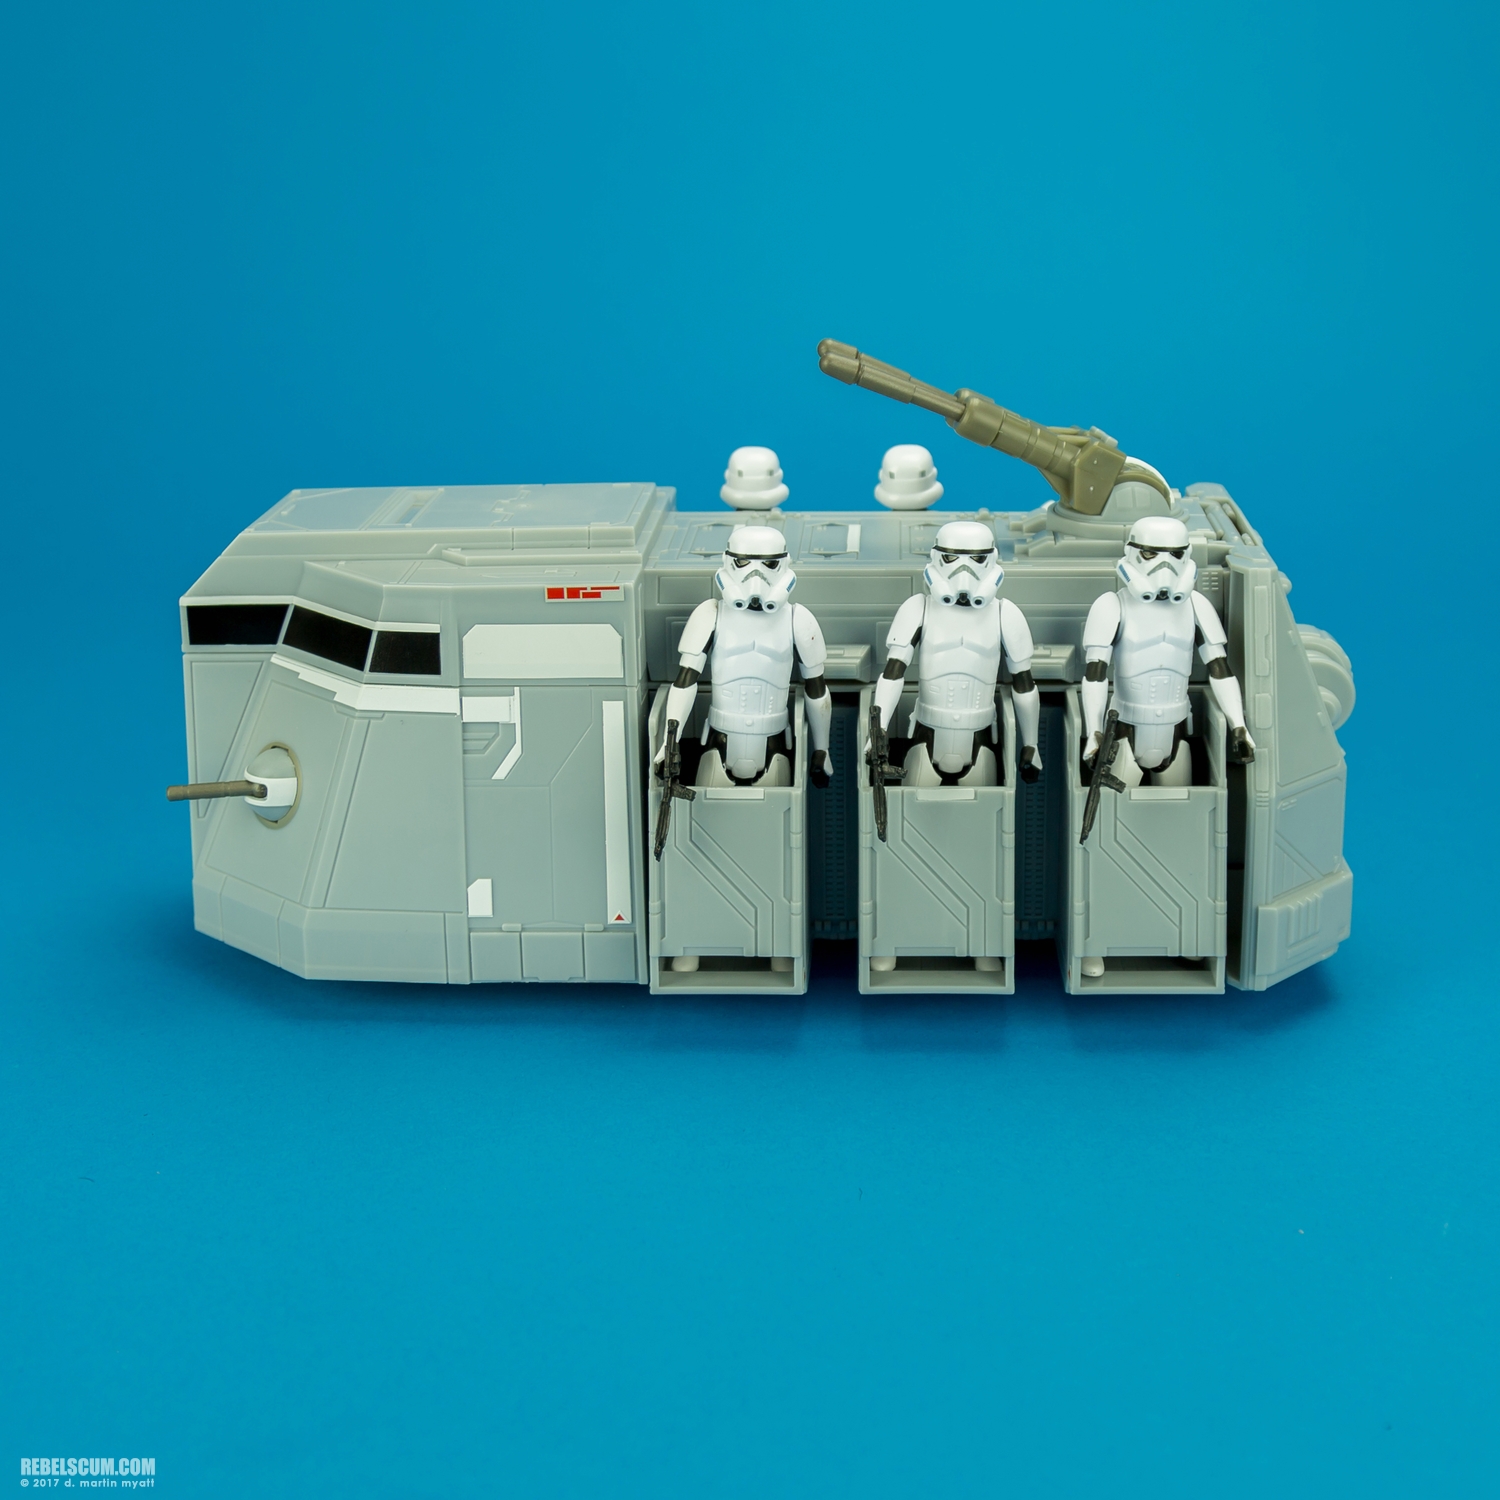 Imperial-Troop-Transport-Star-Wars-Rebels-Vehicle-Hasbro-021.jpg